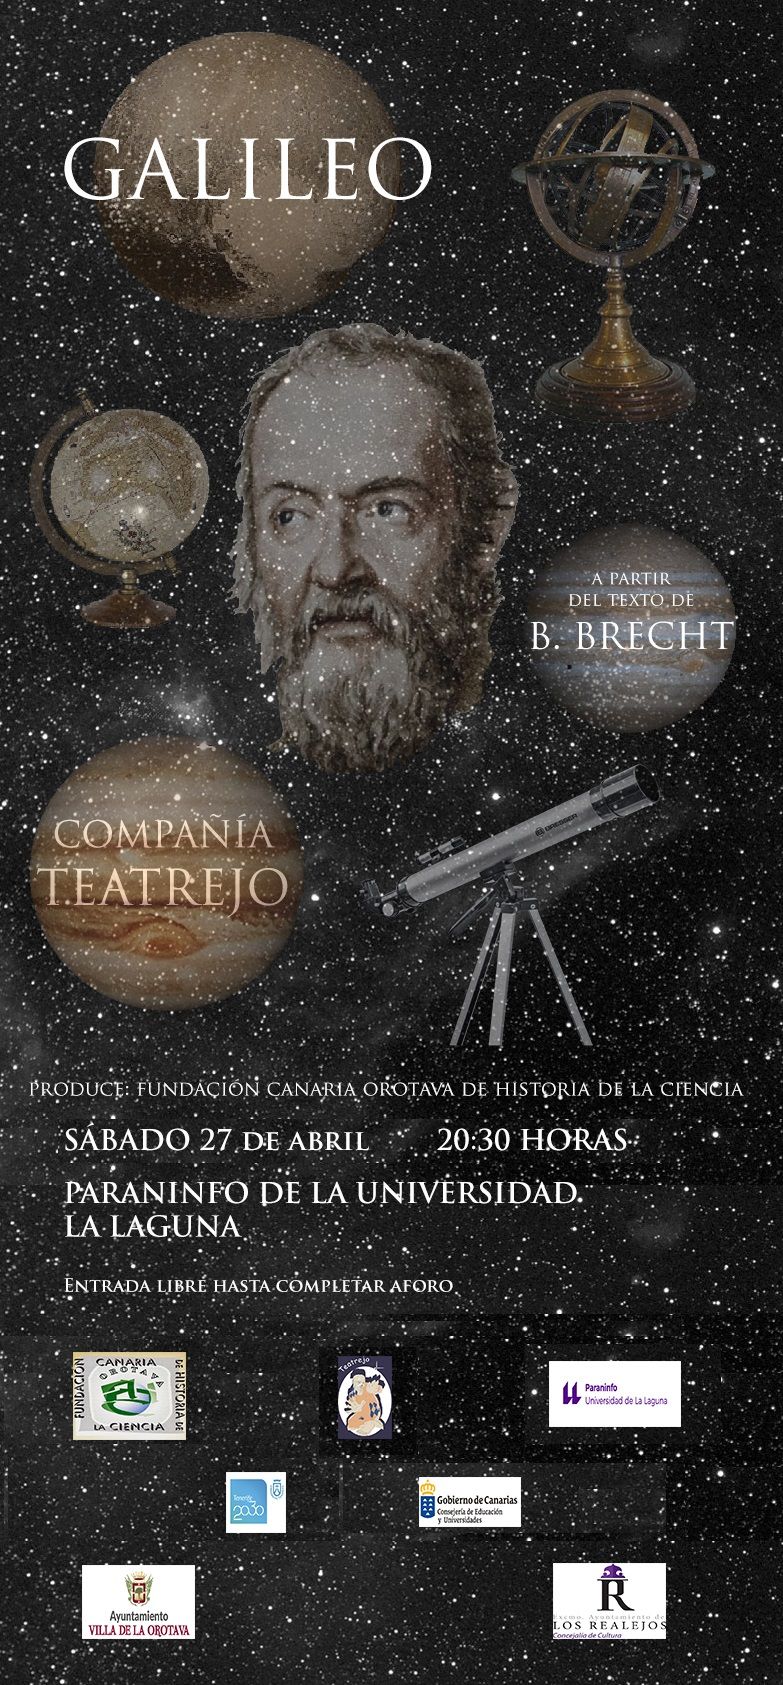 Nuevo cartel de la obra Galielo de Teatrejo para el Paraninfo